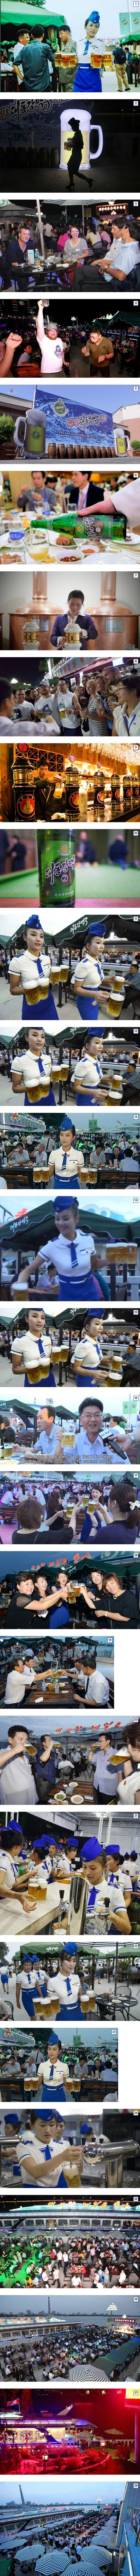 北朝鮮大同江ビール祭りjpg